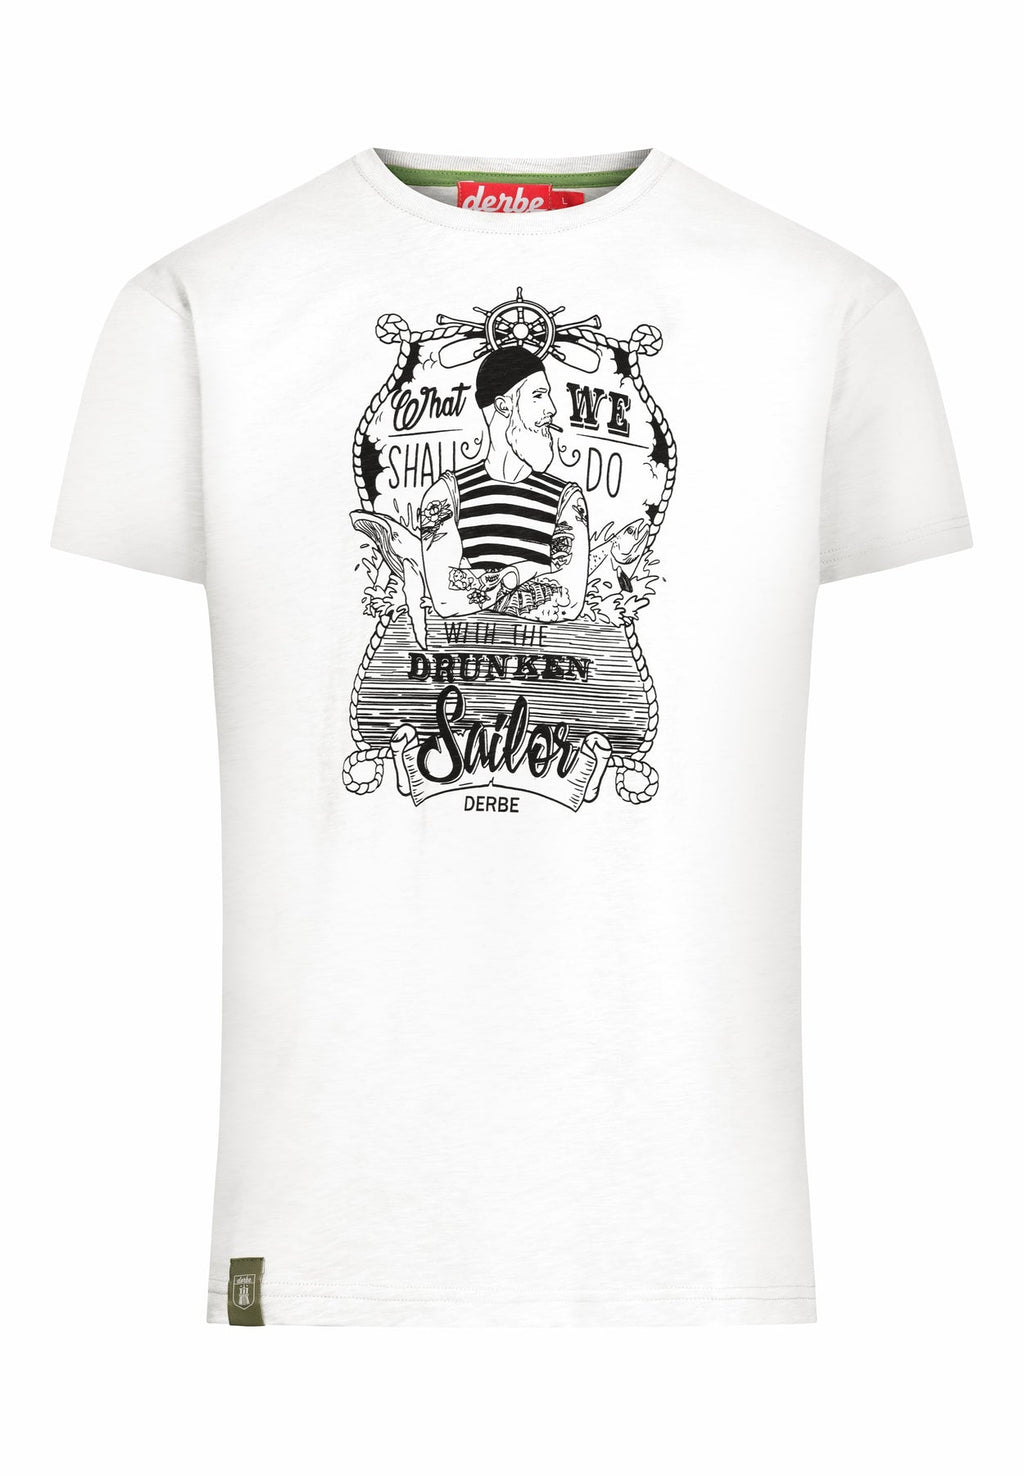 T-Shirt in Offwhite von Derbe Hamburg mit großem Frontprint ( What should we do with a drunken Sailor) aus 100% BioBaumwolle.